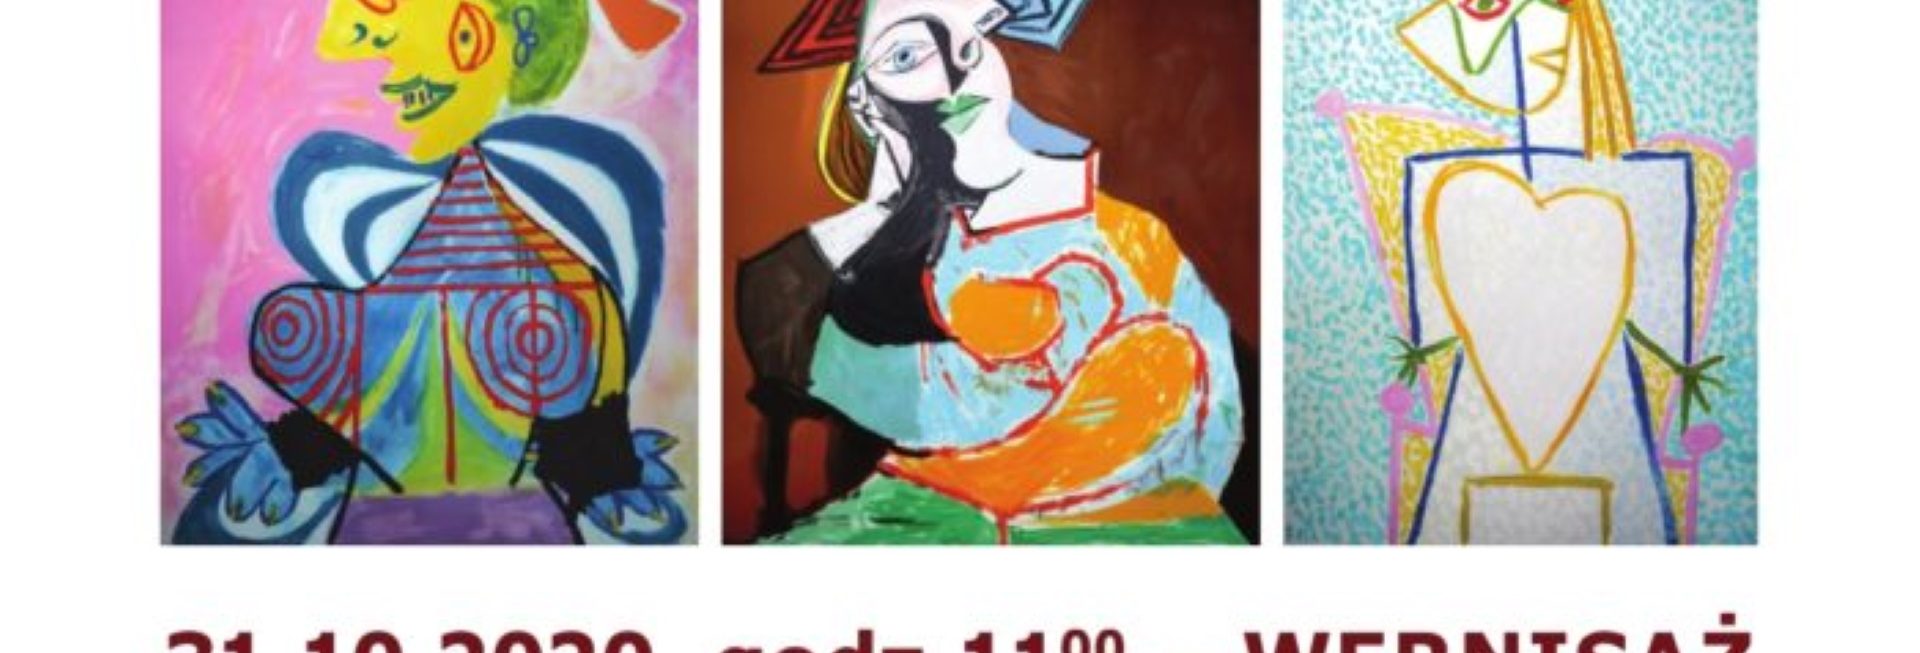 Plakat graficzny zapraszający w dniu 31 października 2020 r. do Giżycka na Wernisaż w Hotelu St. Bruno - Pablo Picasso „Grafika nieokiełznana” - Giżycko 2020. Na plakacie trzy zdjęcia wybranych obrazów artysty oraz program imprezy. 